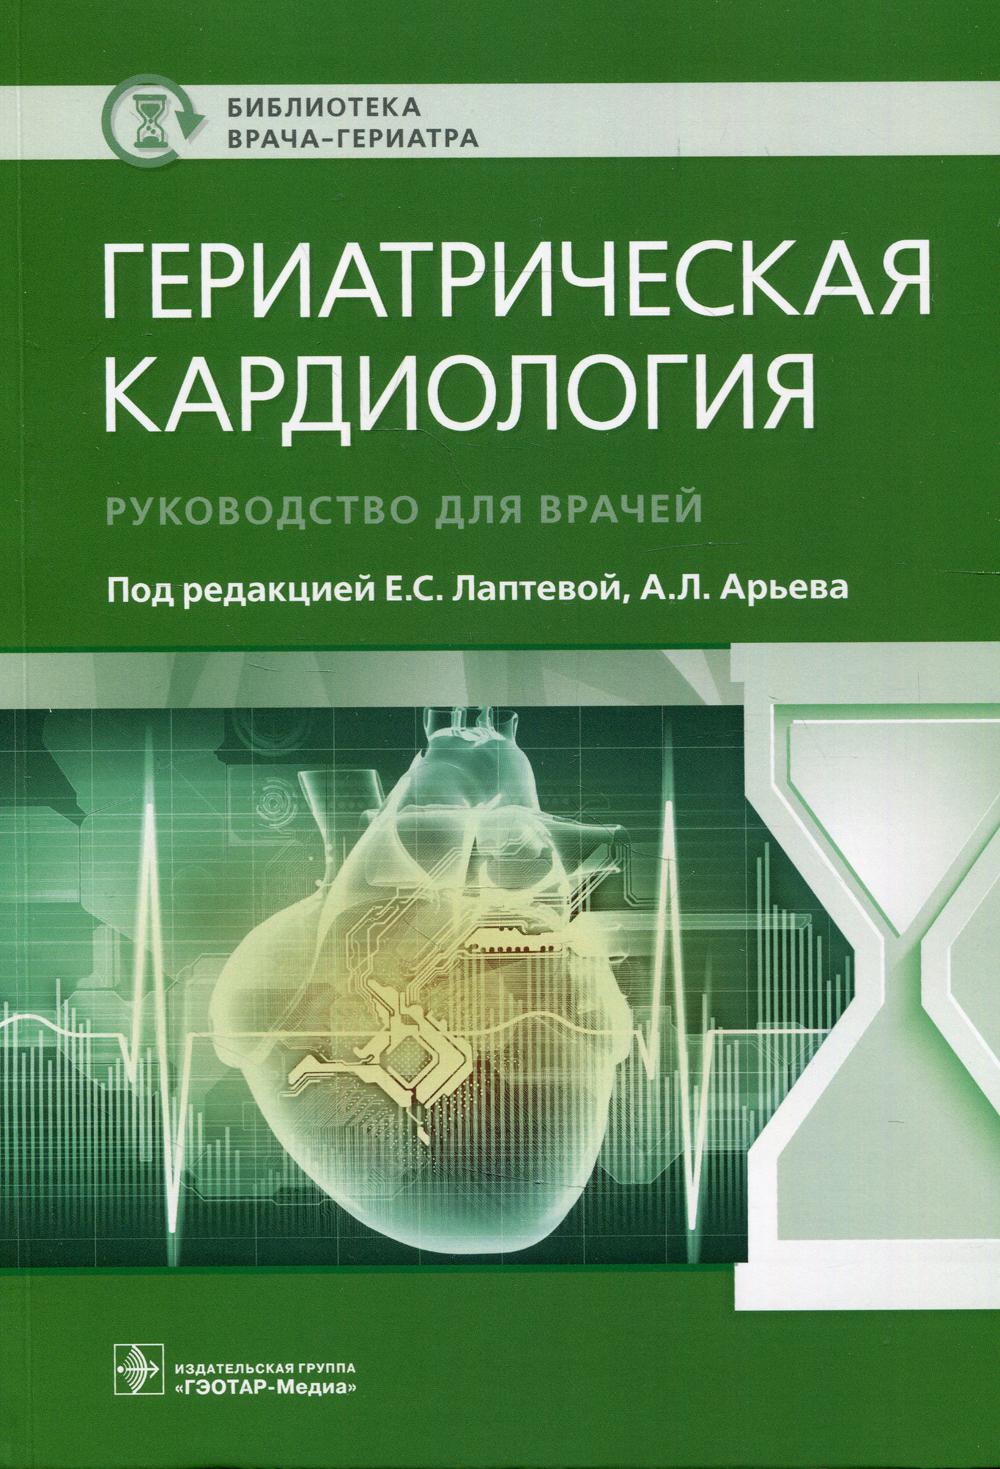 фото Книга гериатрическая кардиология гэотар-медиа